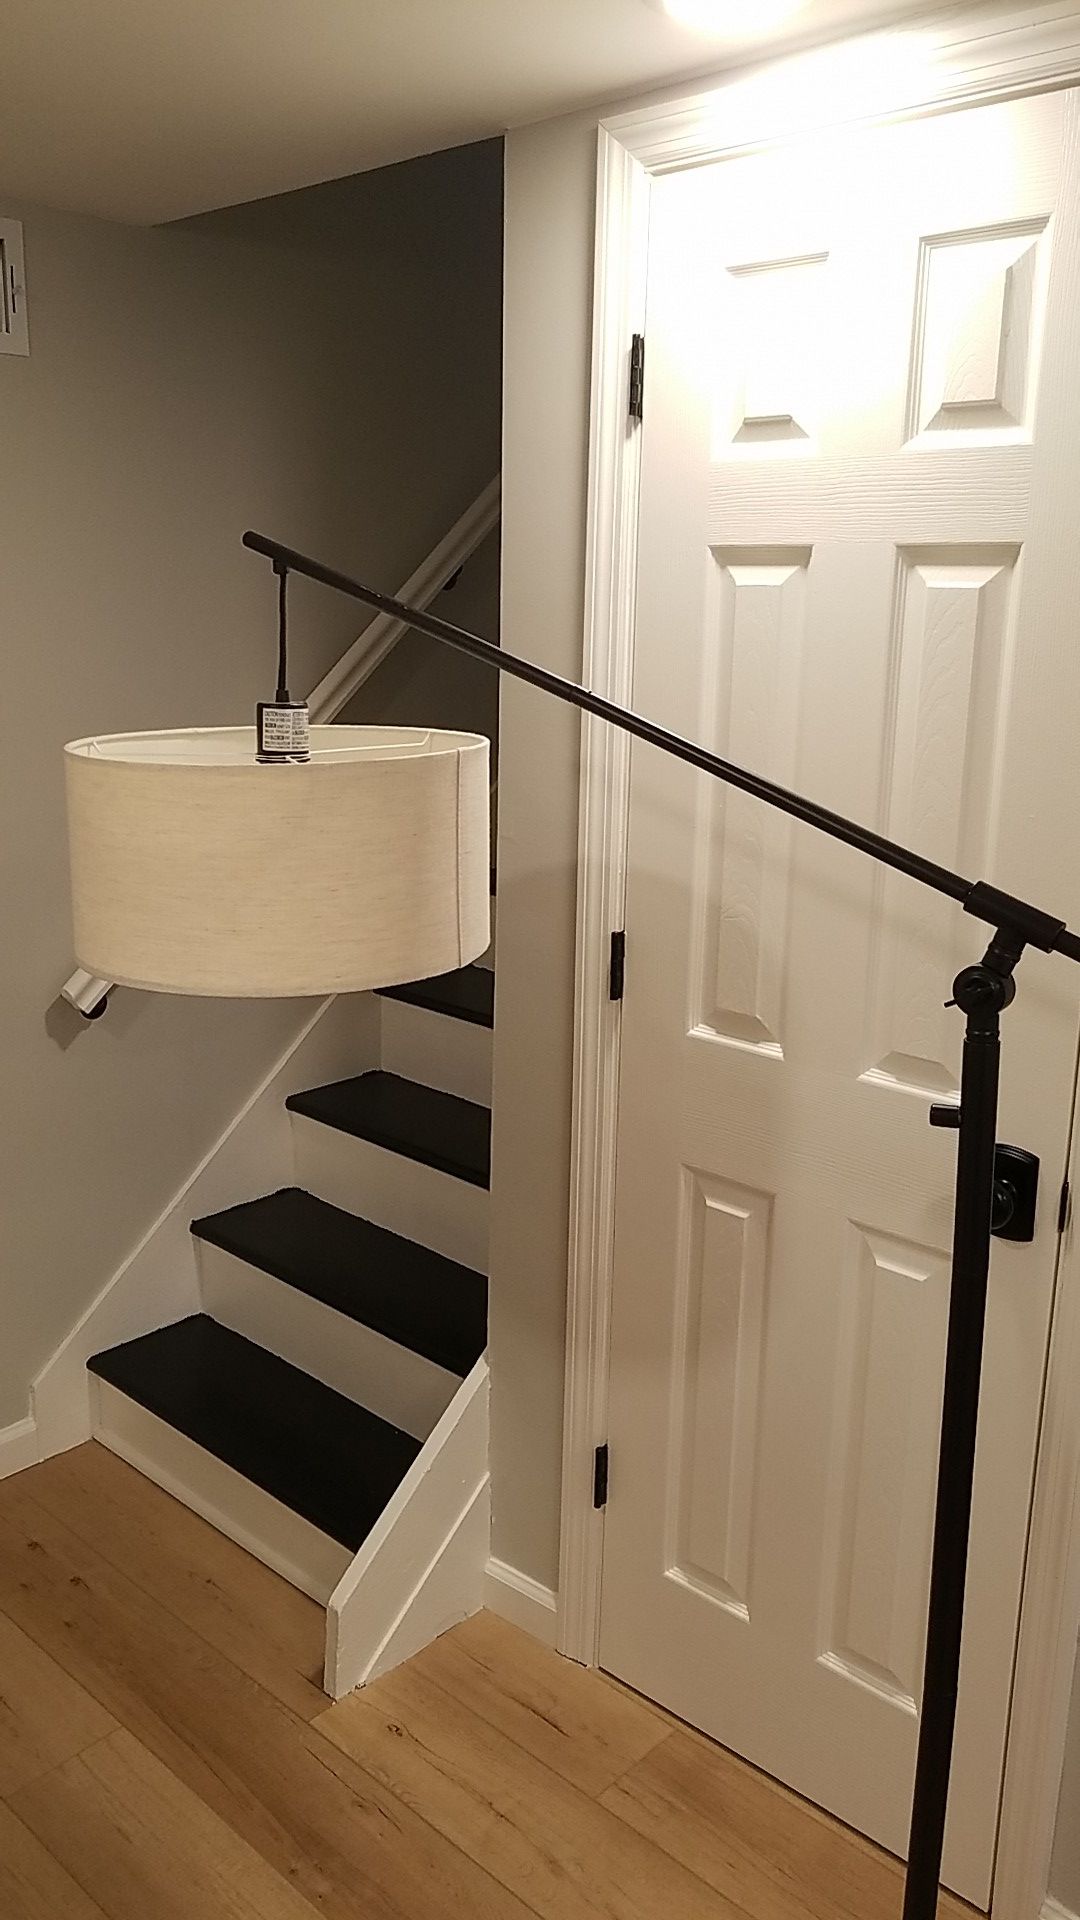 Threshold adjustable floor lamp